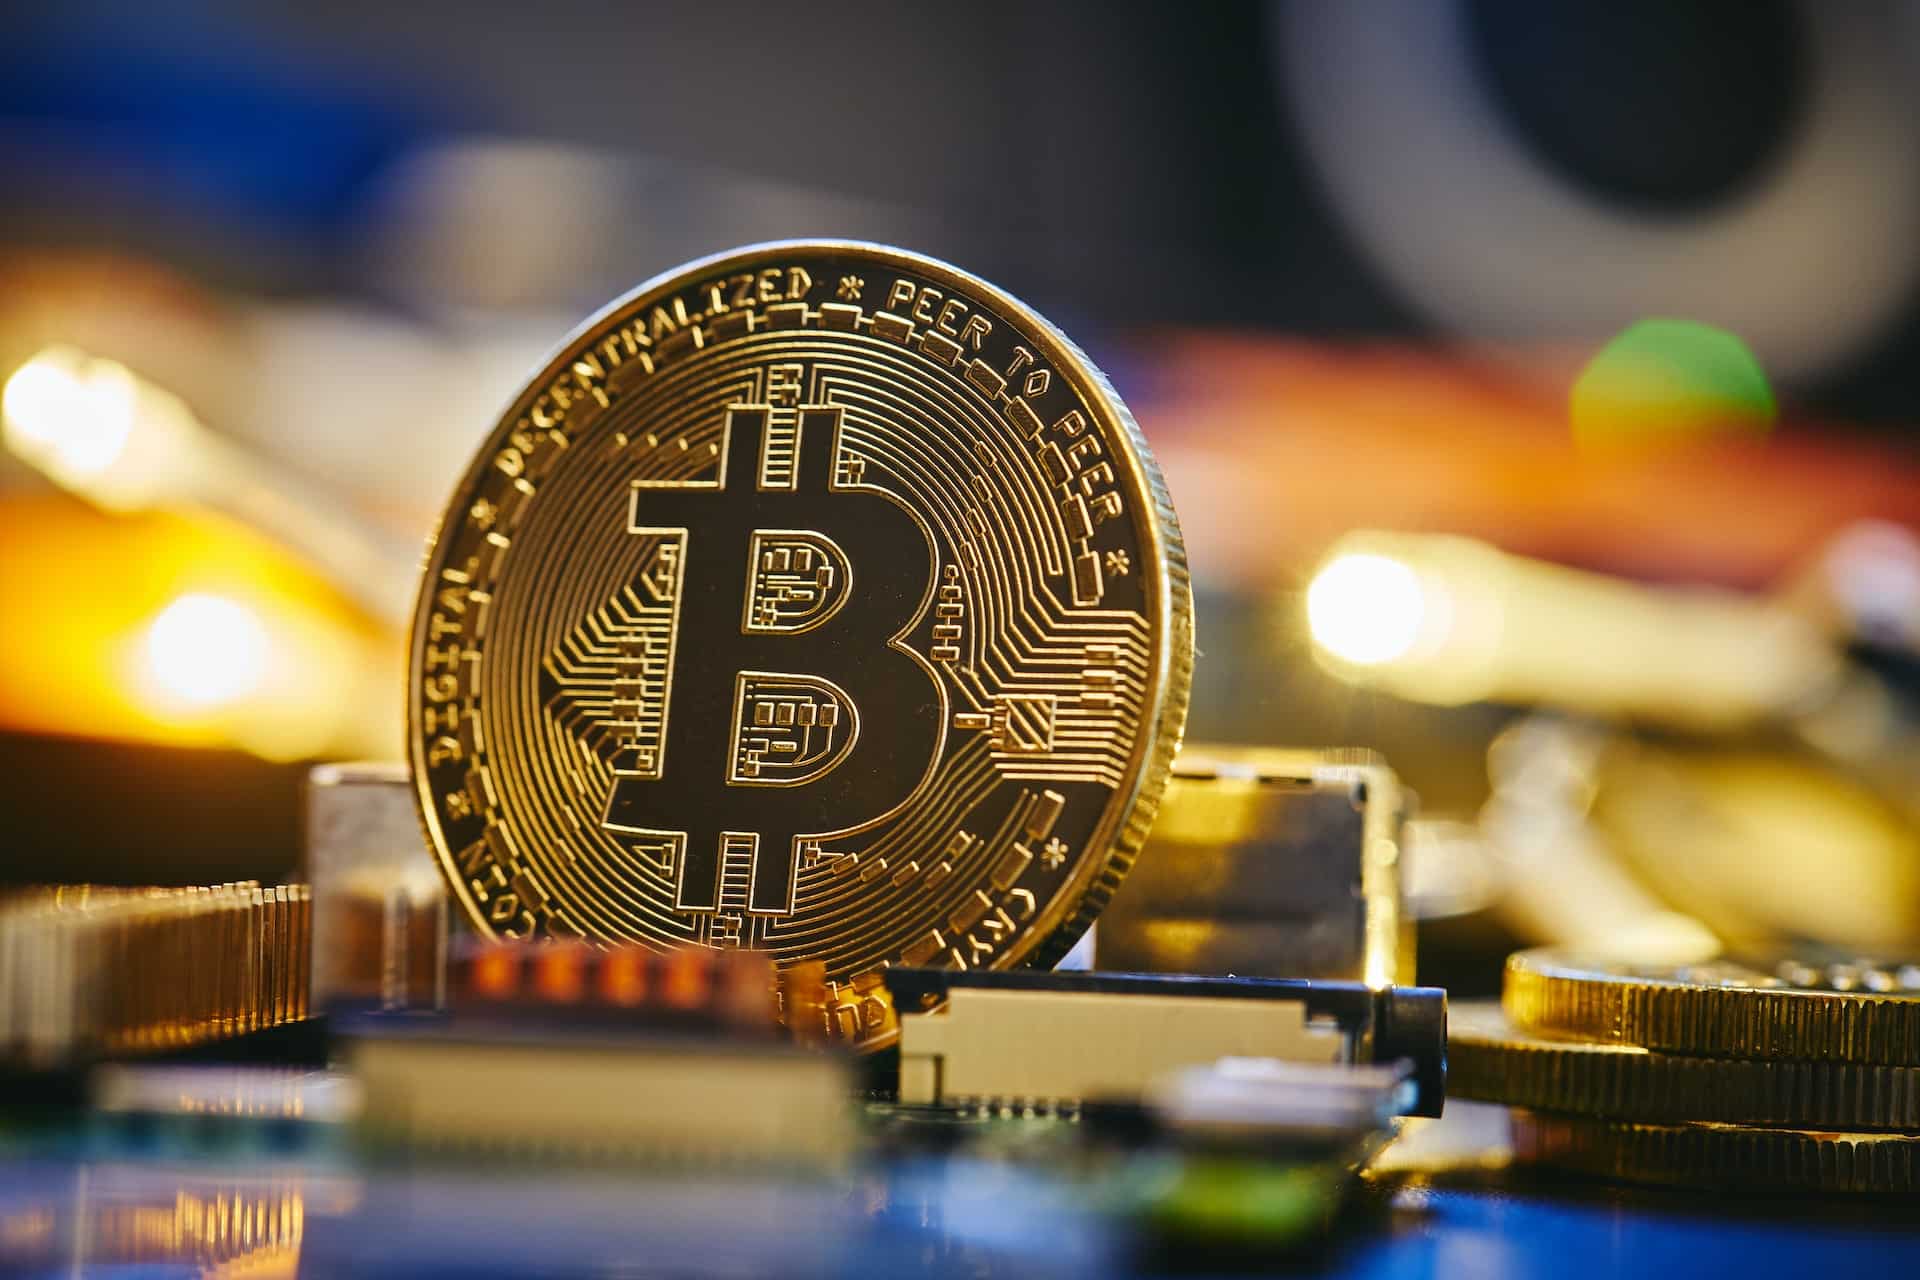 Mineração de Bitcoin: Tether anuncia entrada no setor, enquanto nova plataforma em nuvem se lança no mercado